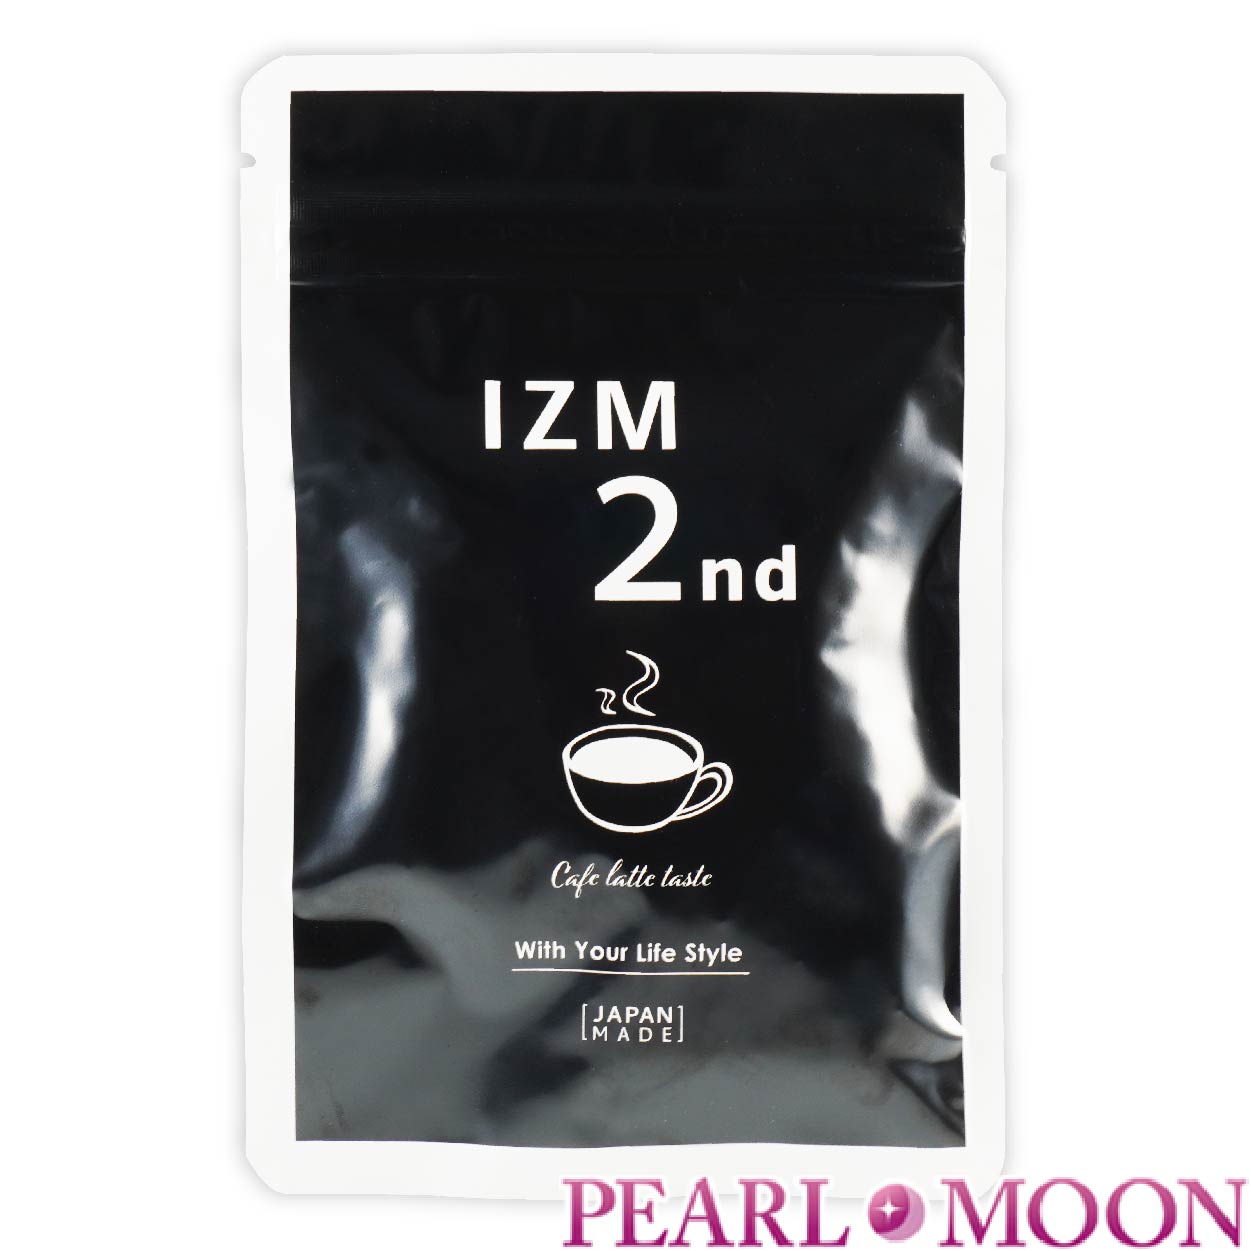 IZM 2nd イズム セカンド 27g サプリメント コーヒーラテテイスト